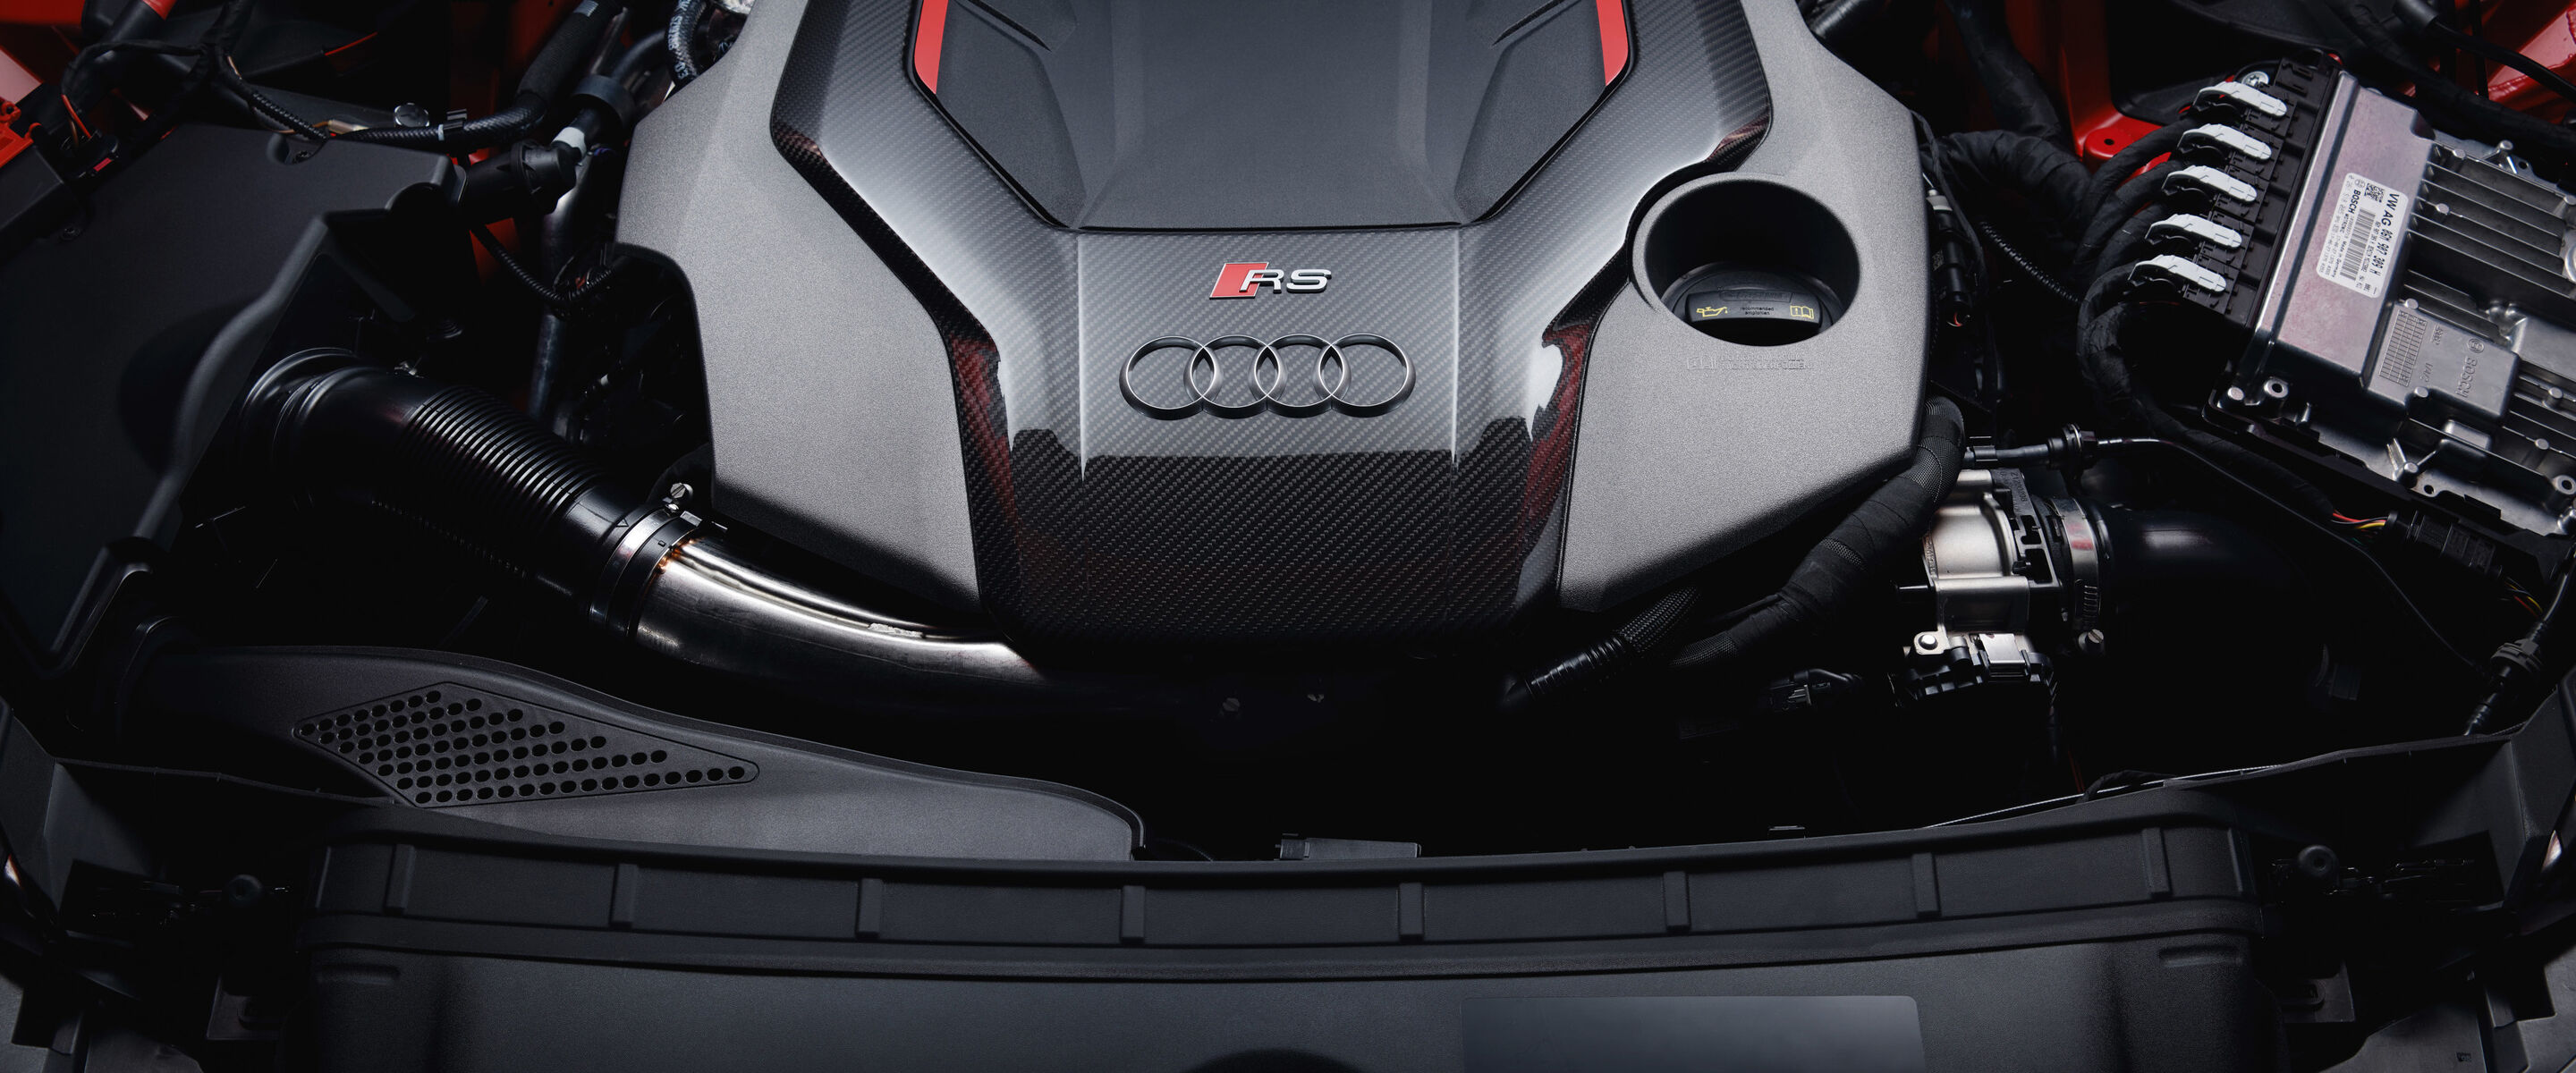 Huiskes-Kokkeler en Audi Centrum Hengelo officieel Audi Sport dealer